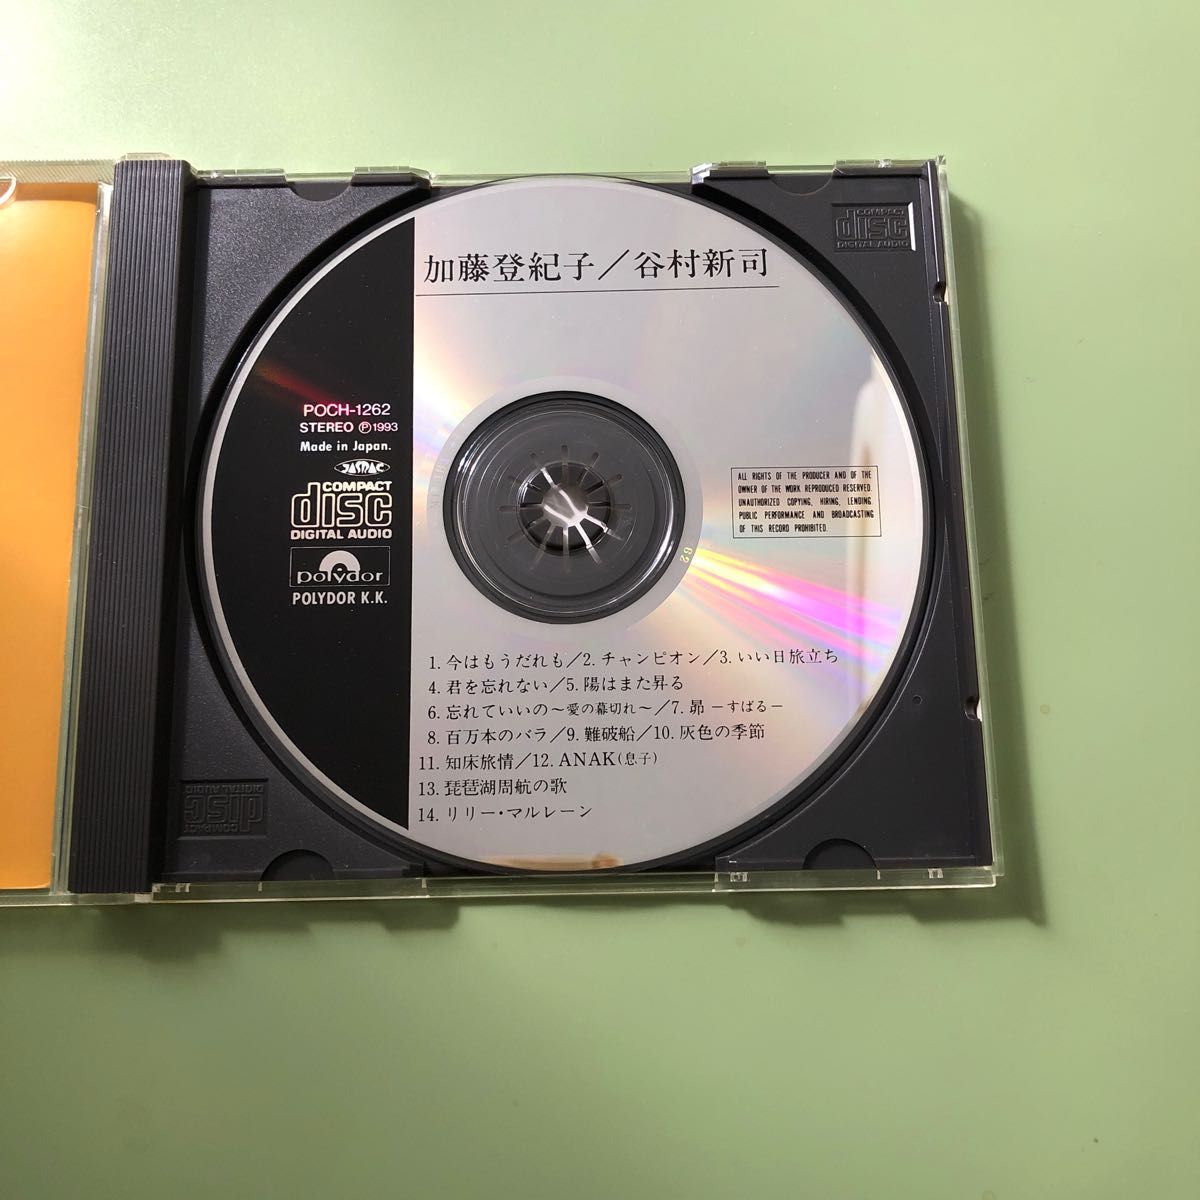 谷村新司CD加藤登紀子CD小川知子CD